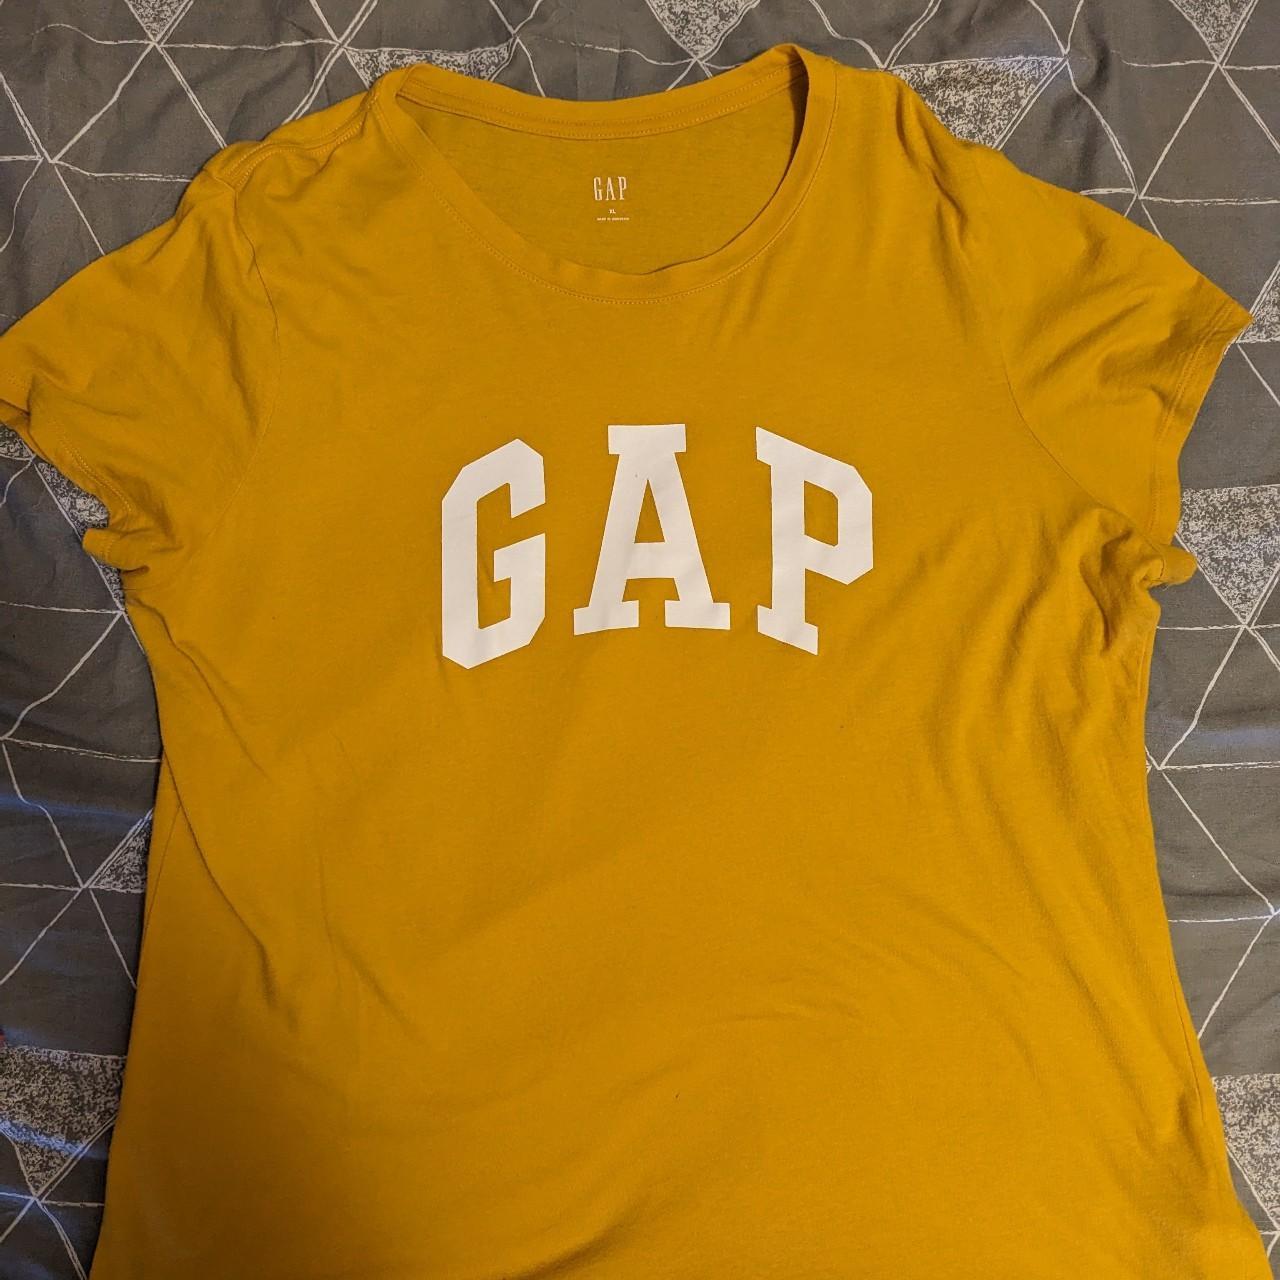 New Mustard yellow GAP T-shirt Never worn,... - Depop